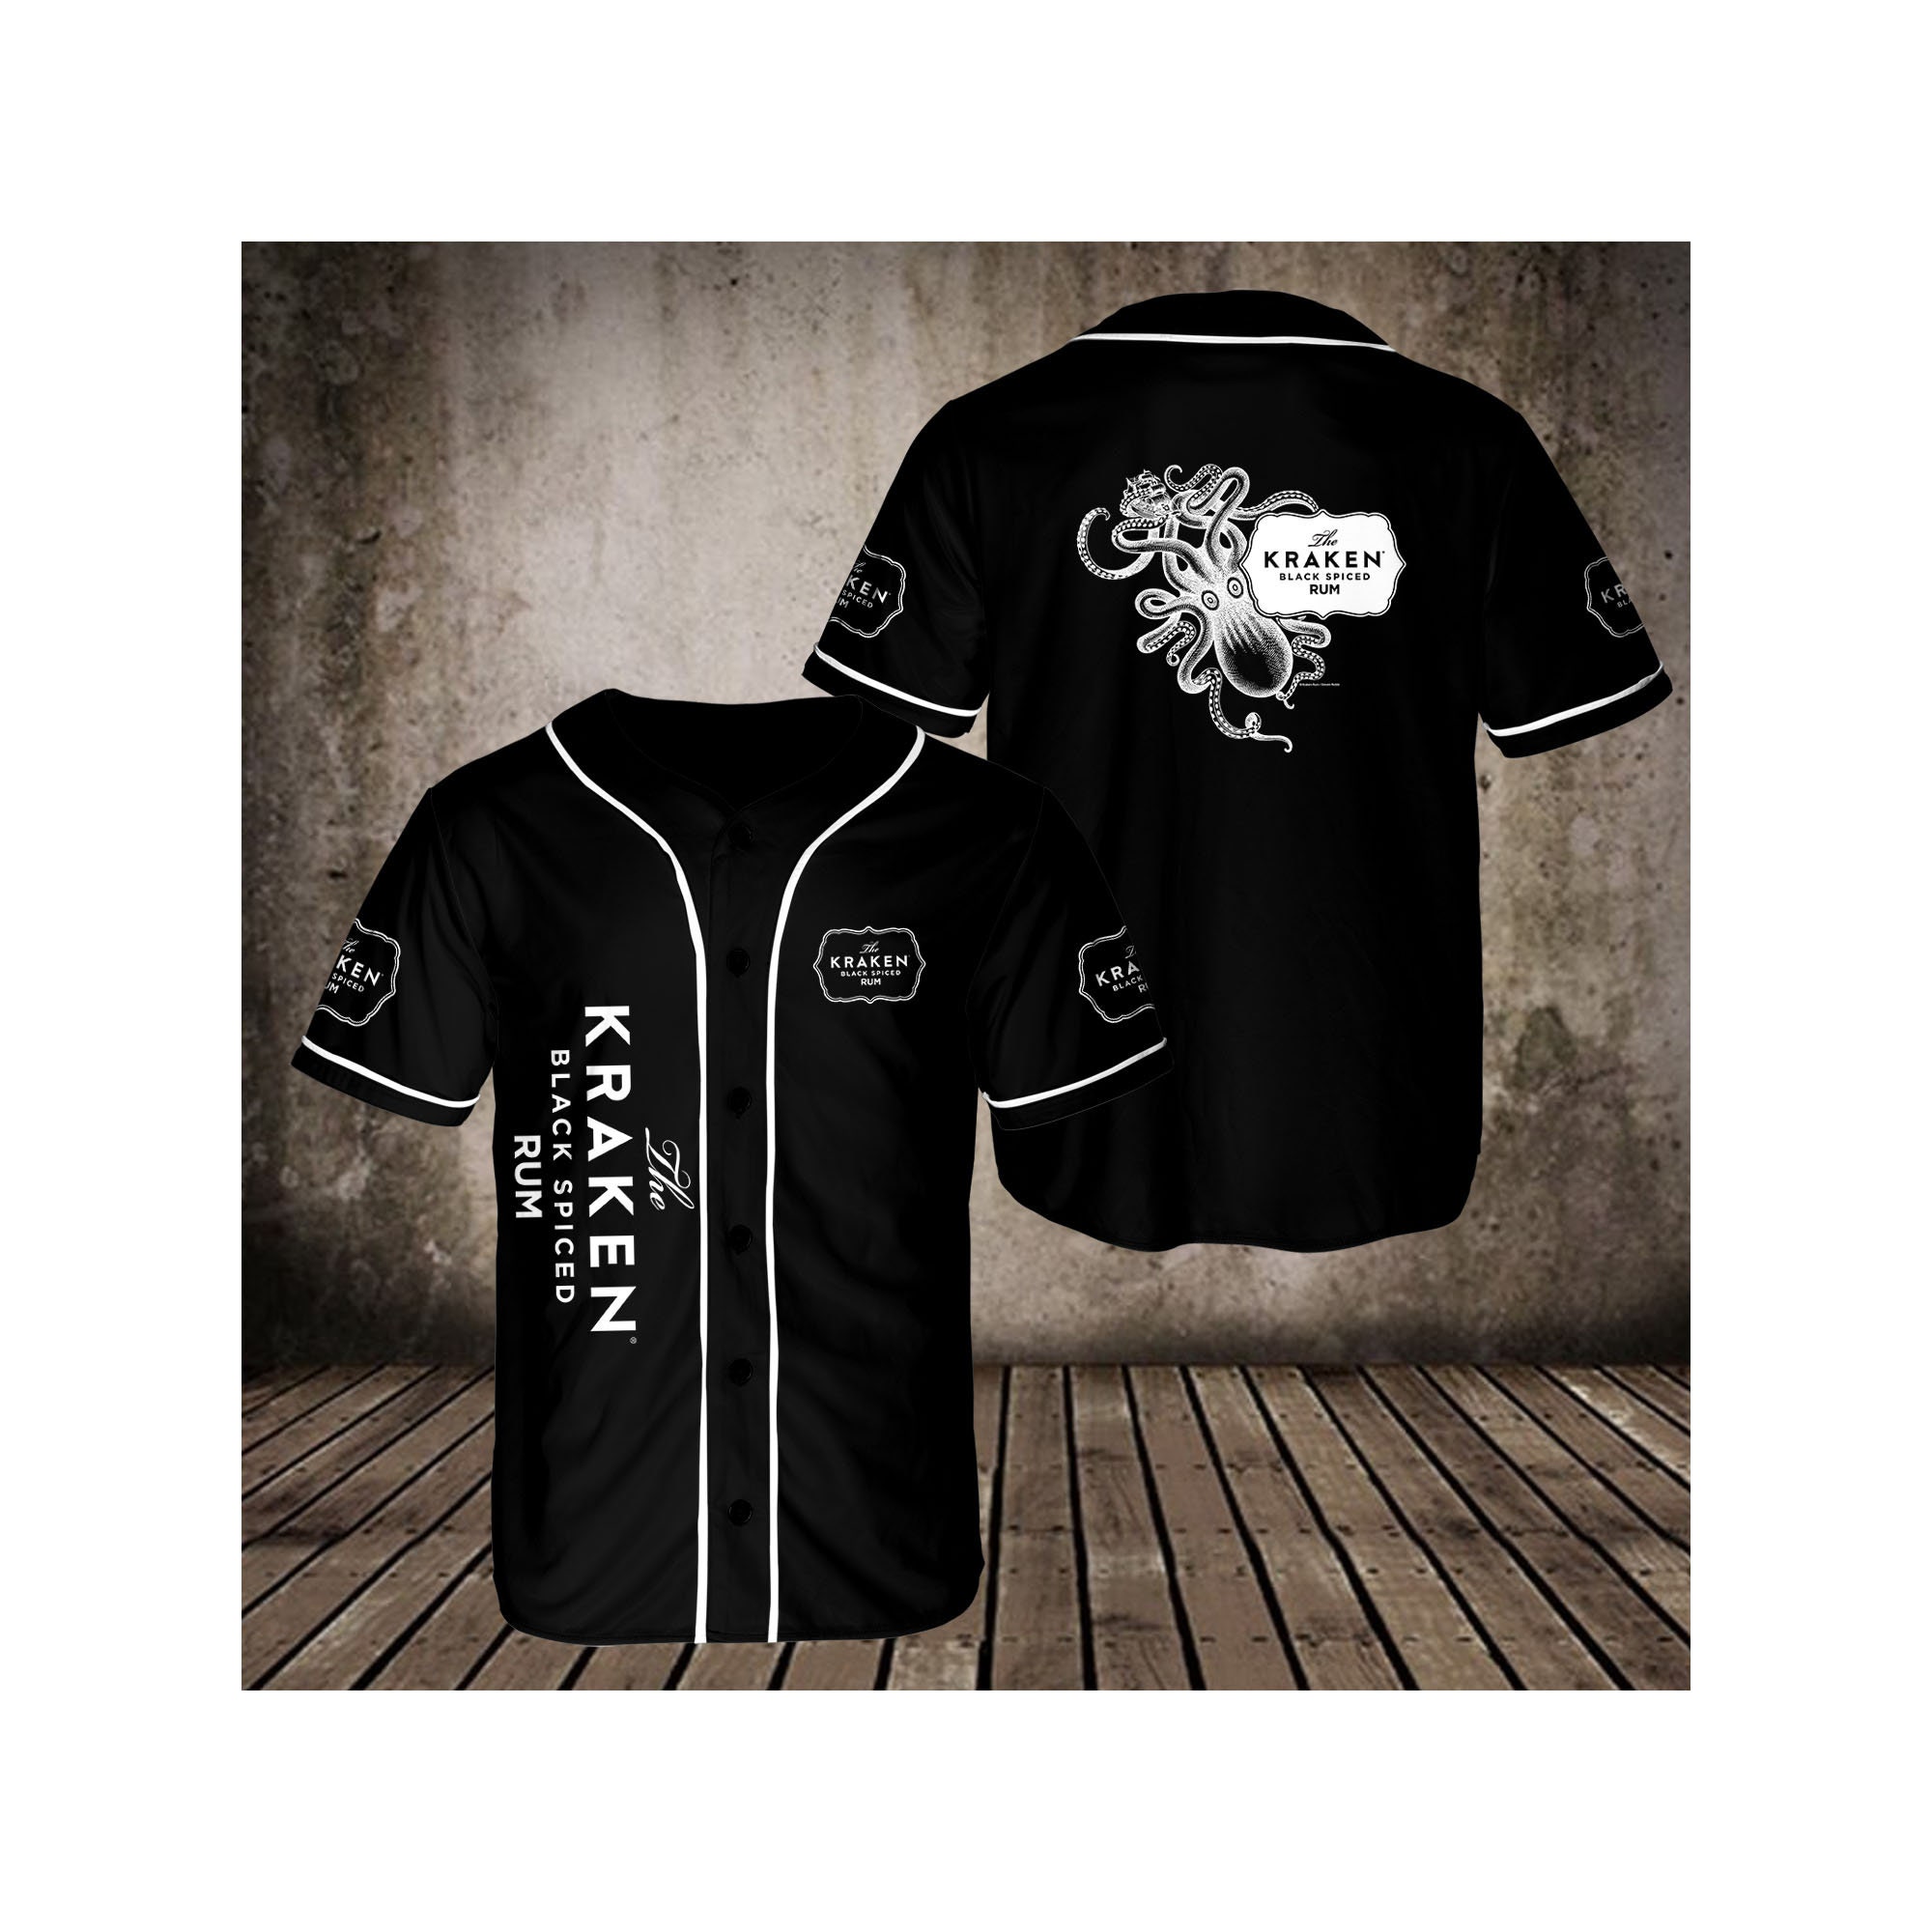 Discover Black The Kraken Rum Baseball Jersey, Black The Kraken Rum 3D Shirt